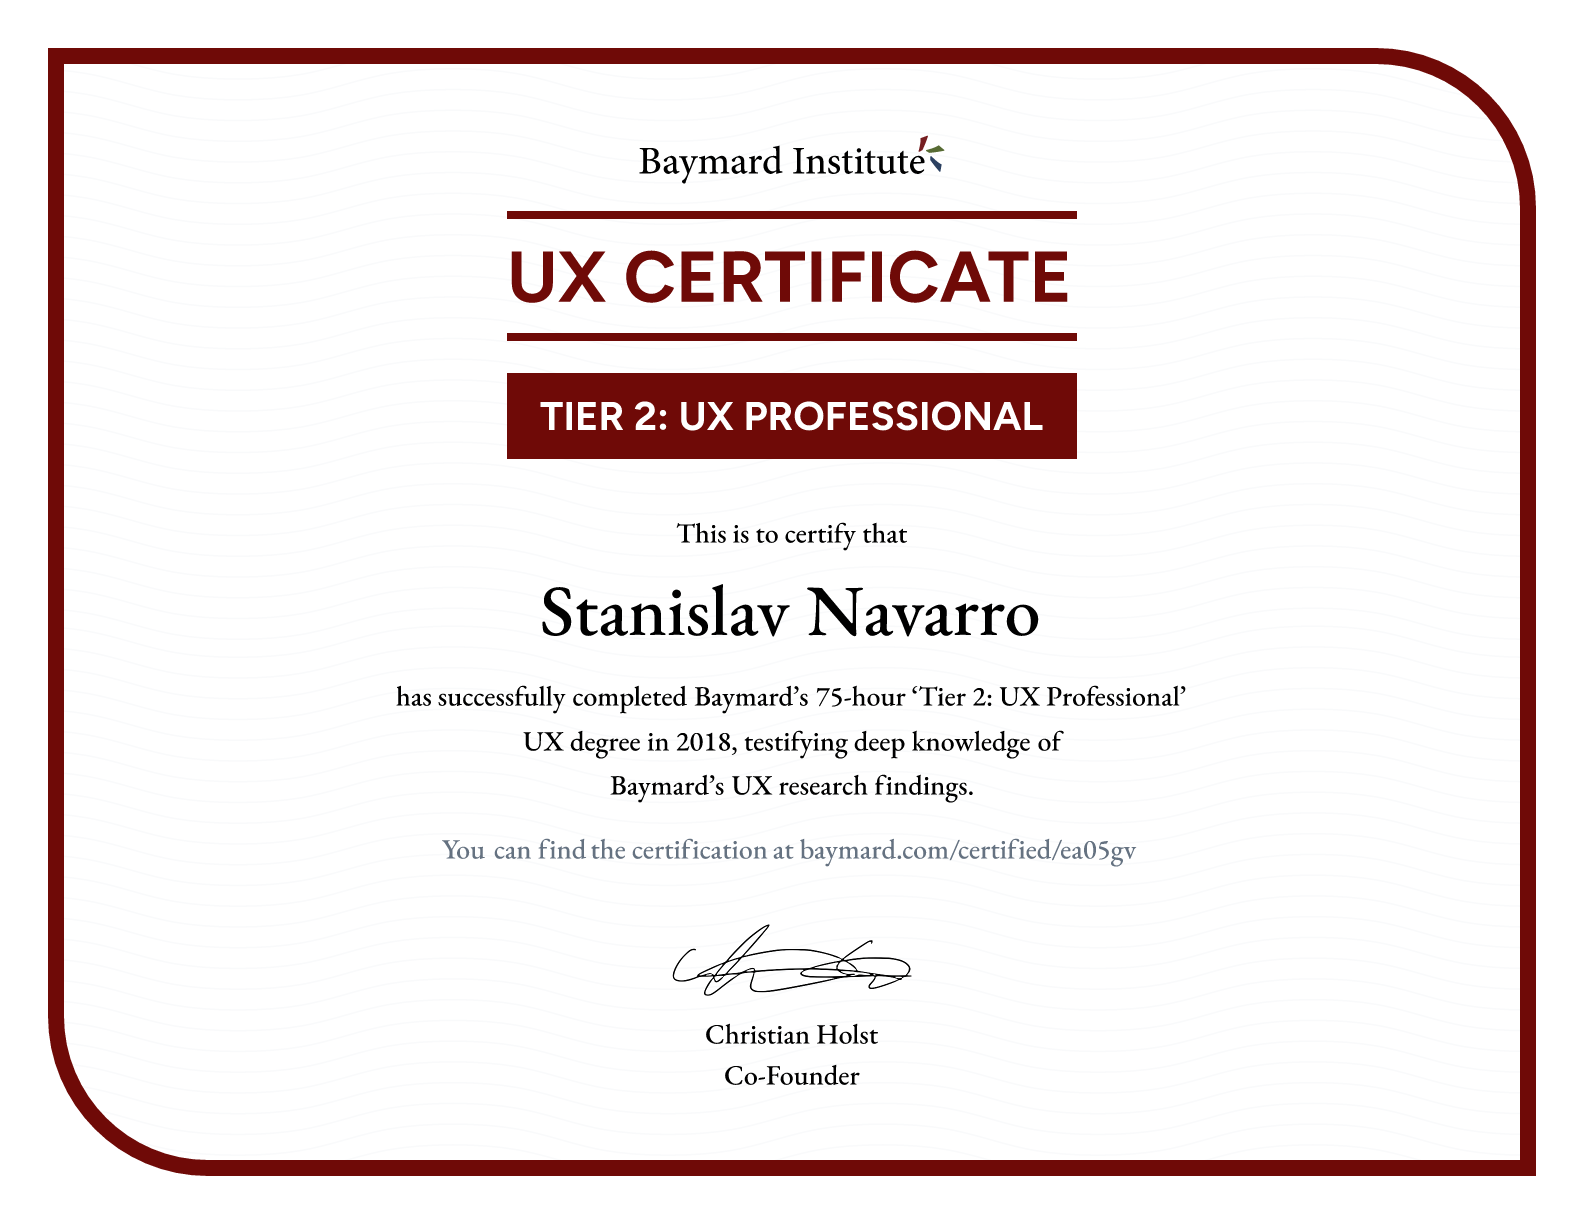 Stanislav Navarro’s certificate